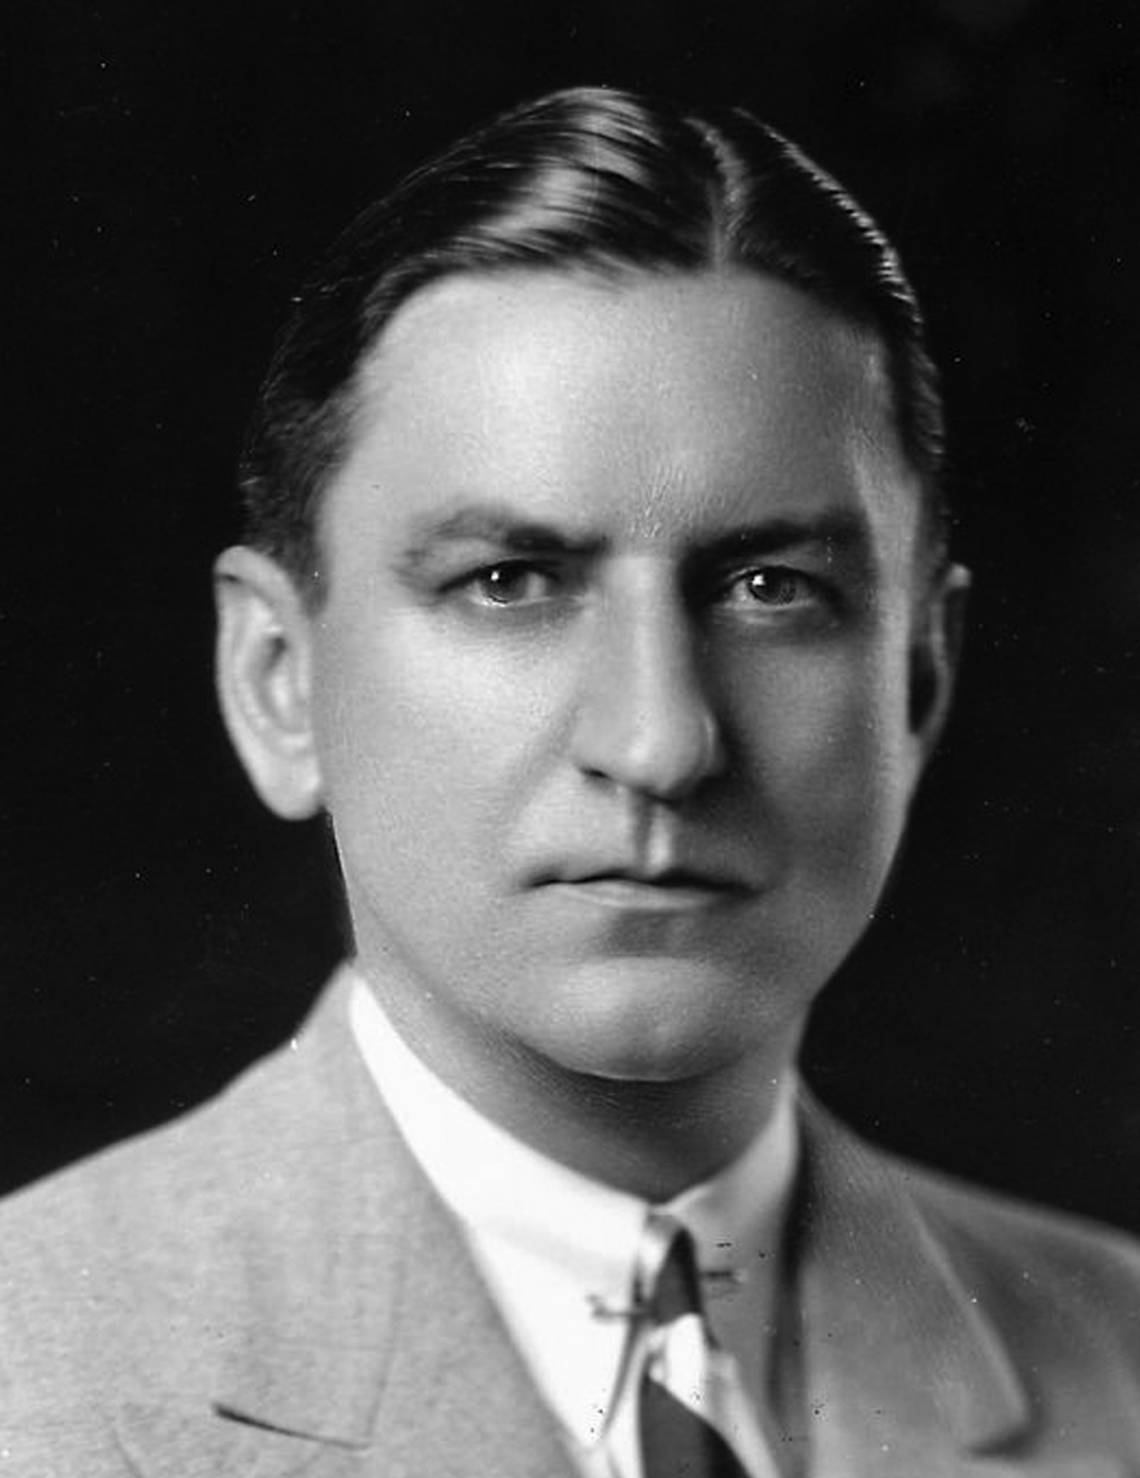 George P. Marshall